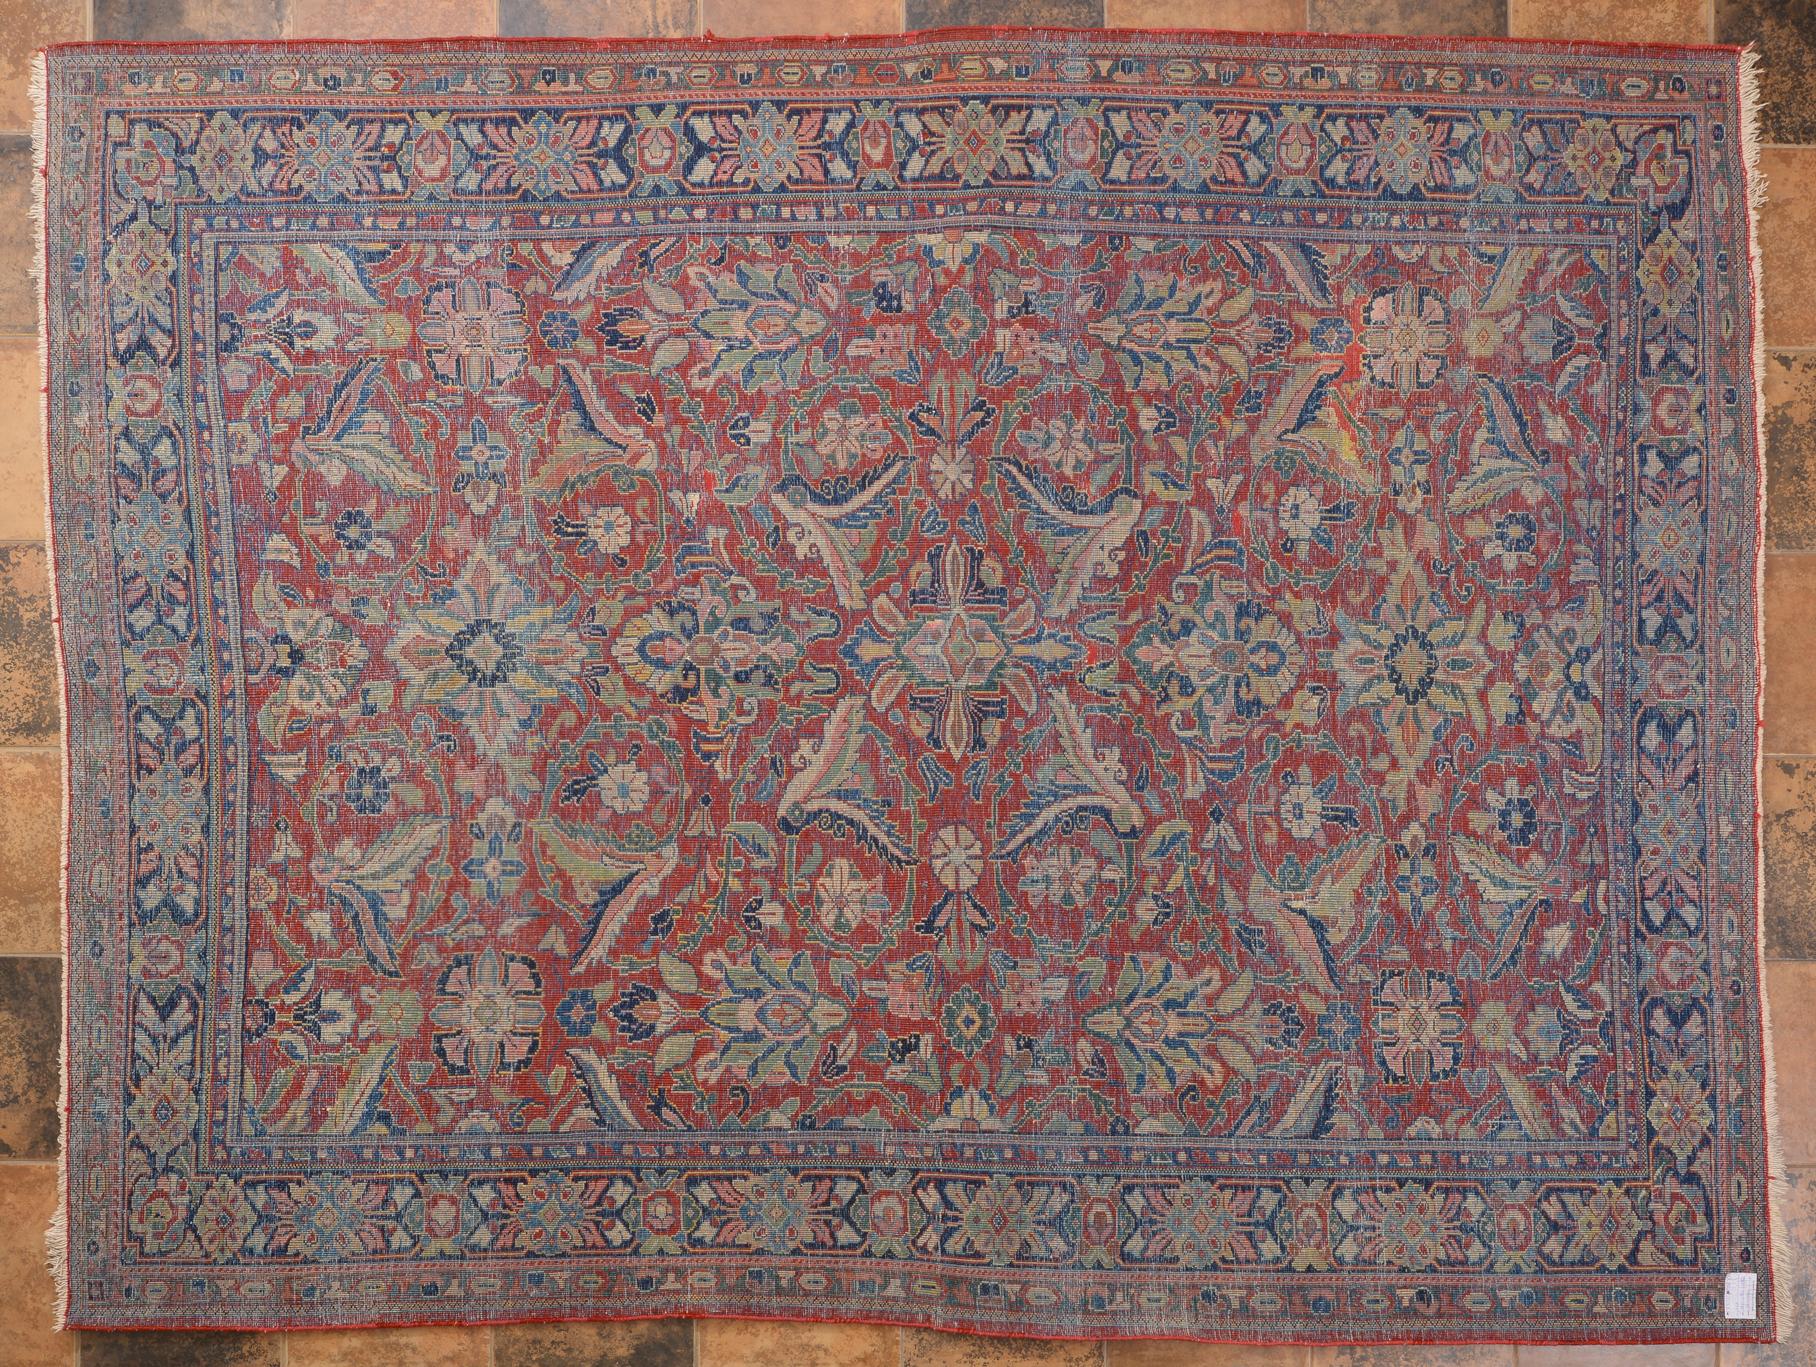 Other Antique Garebagh Rug or Carpet For Sale